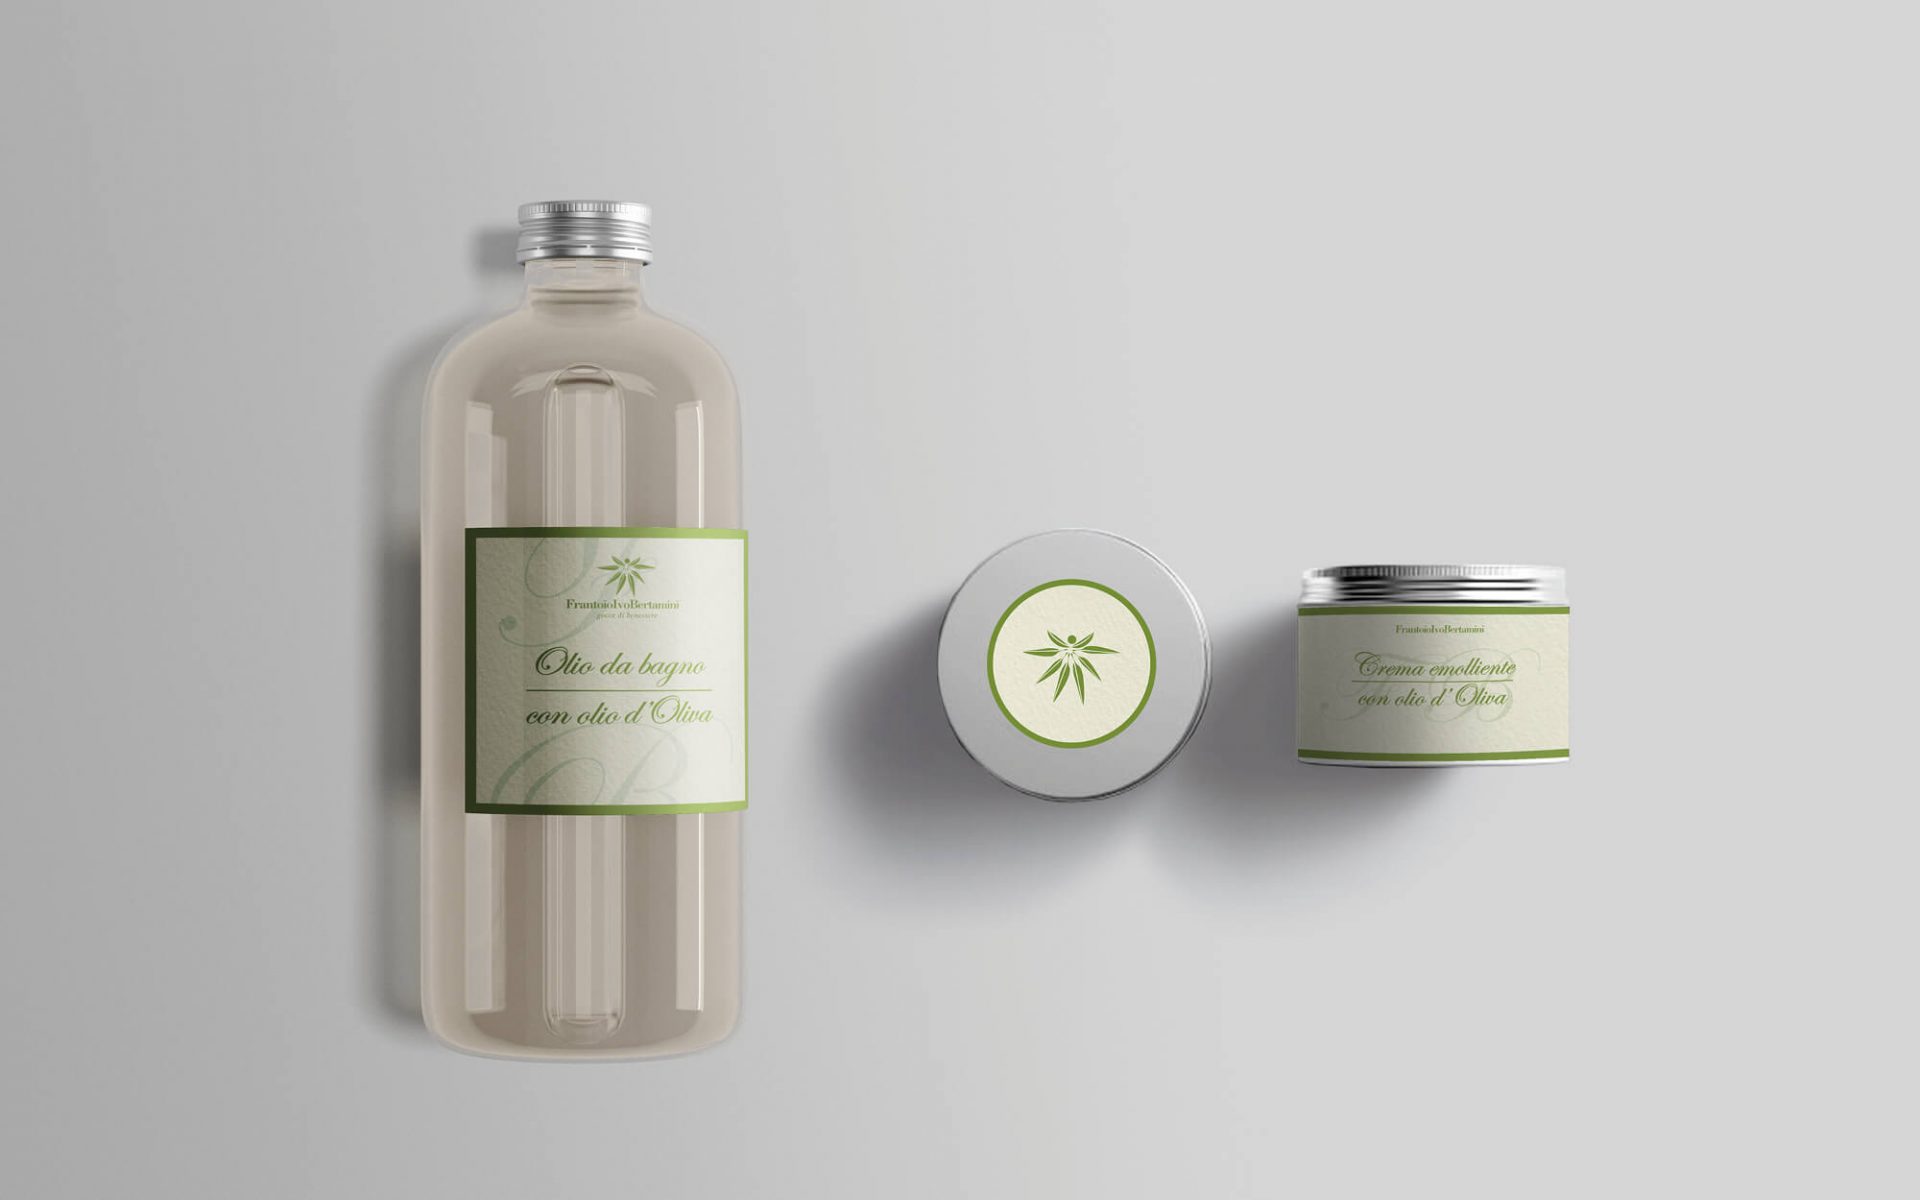 linea etichette cosmetici all'olio di oliva progettata dalla agenzia di pubblicità diade studio arco trento